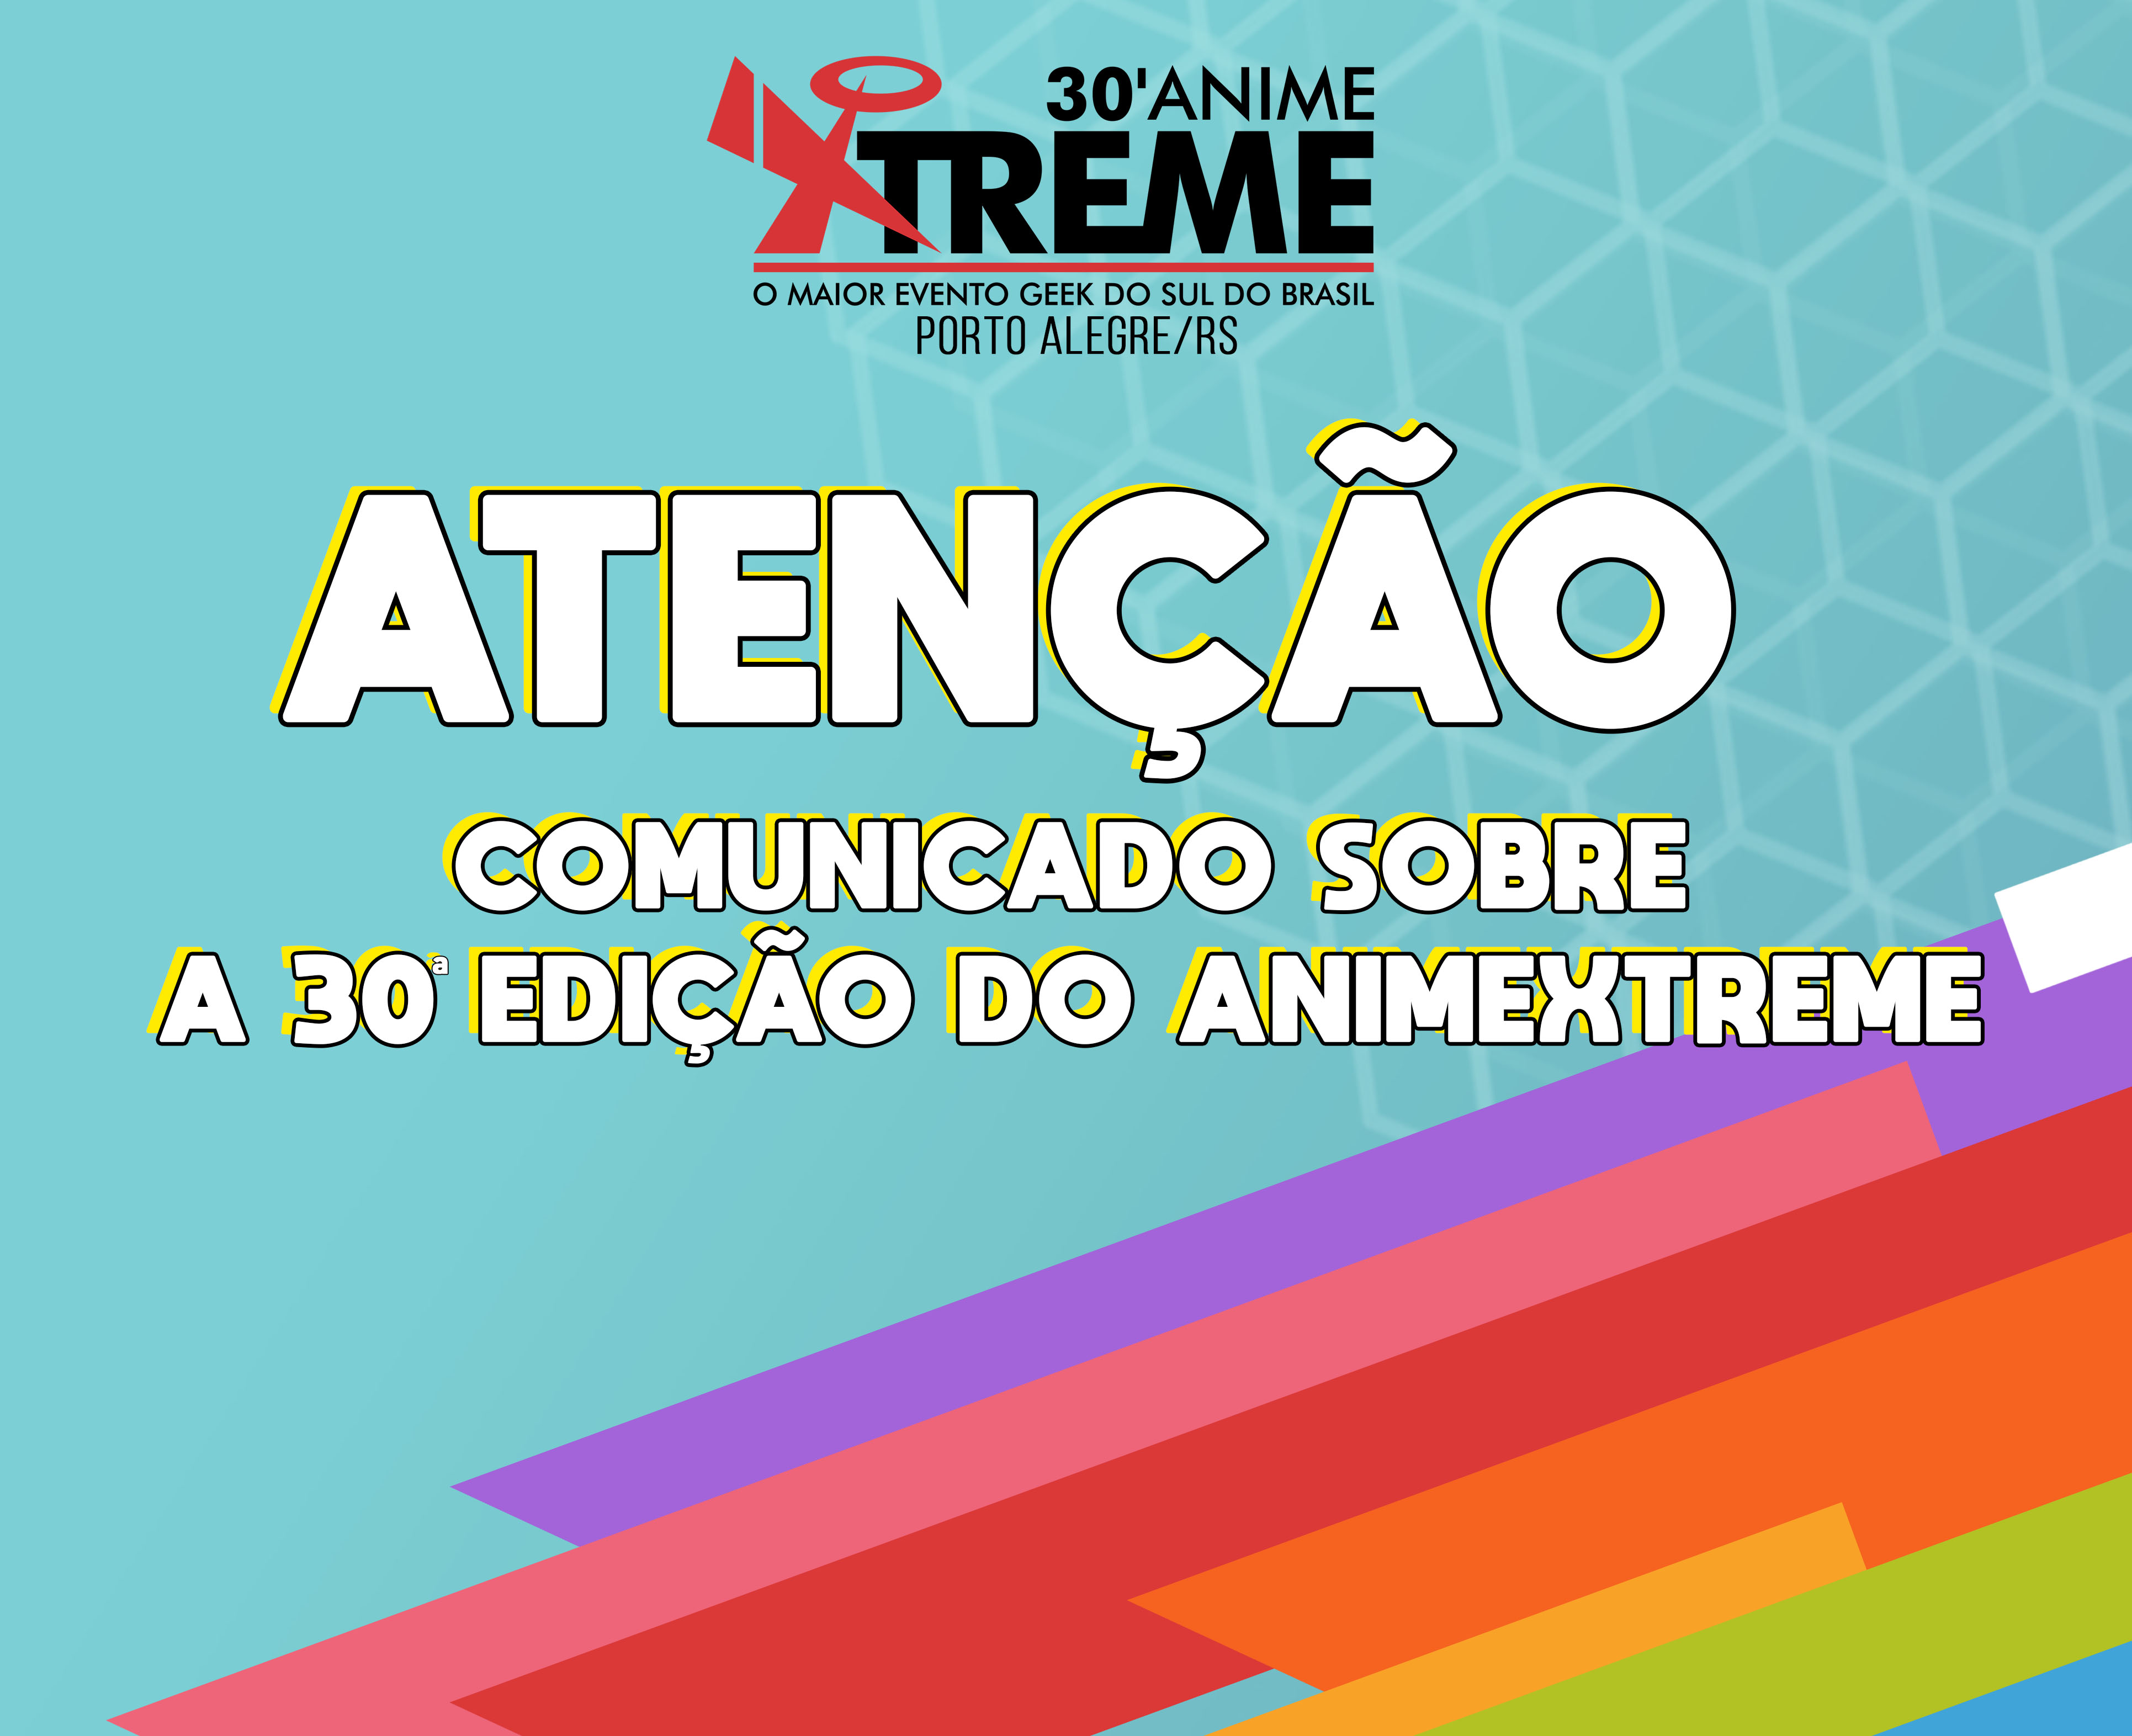 31º Animextreme – O Maior Evento Geek do Sul do Brasil